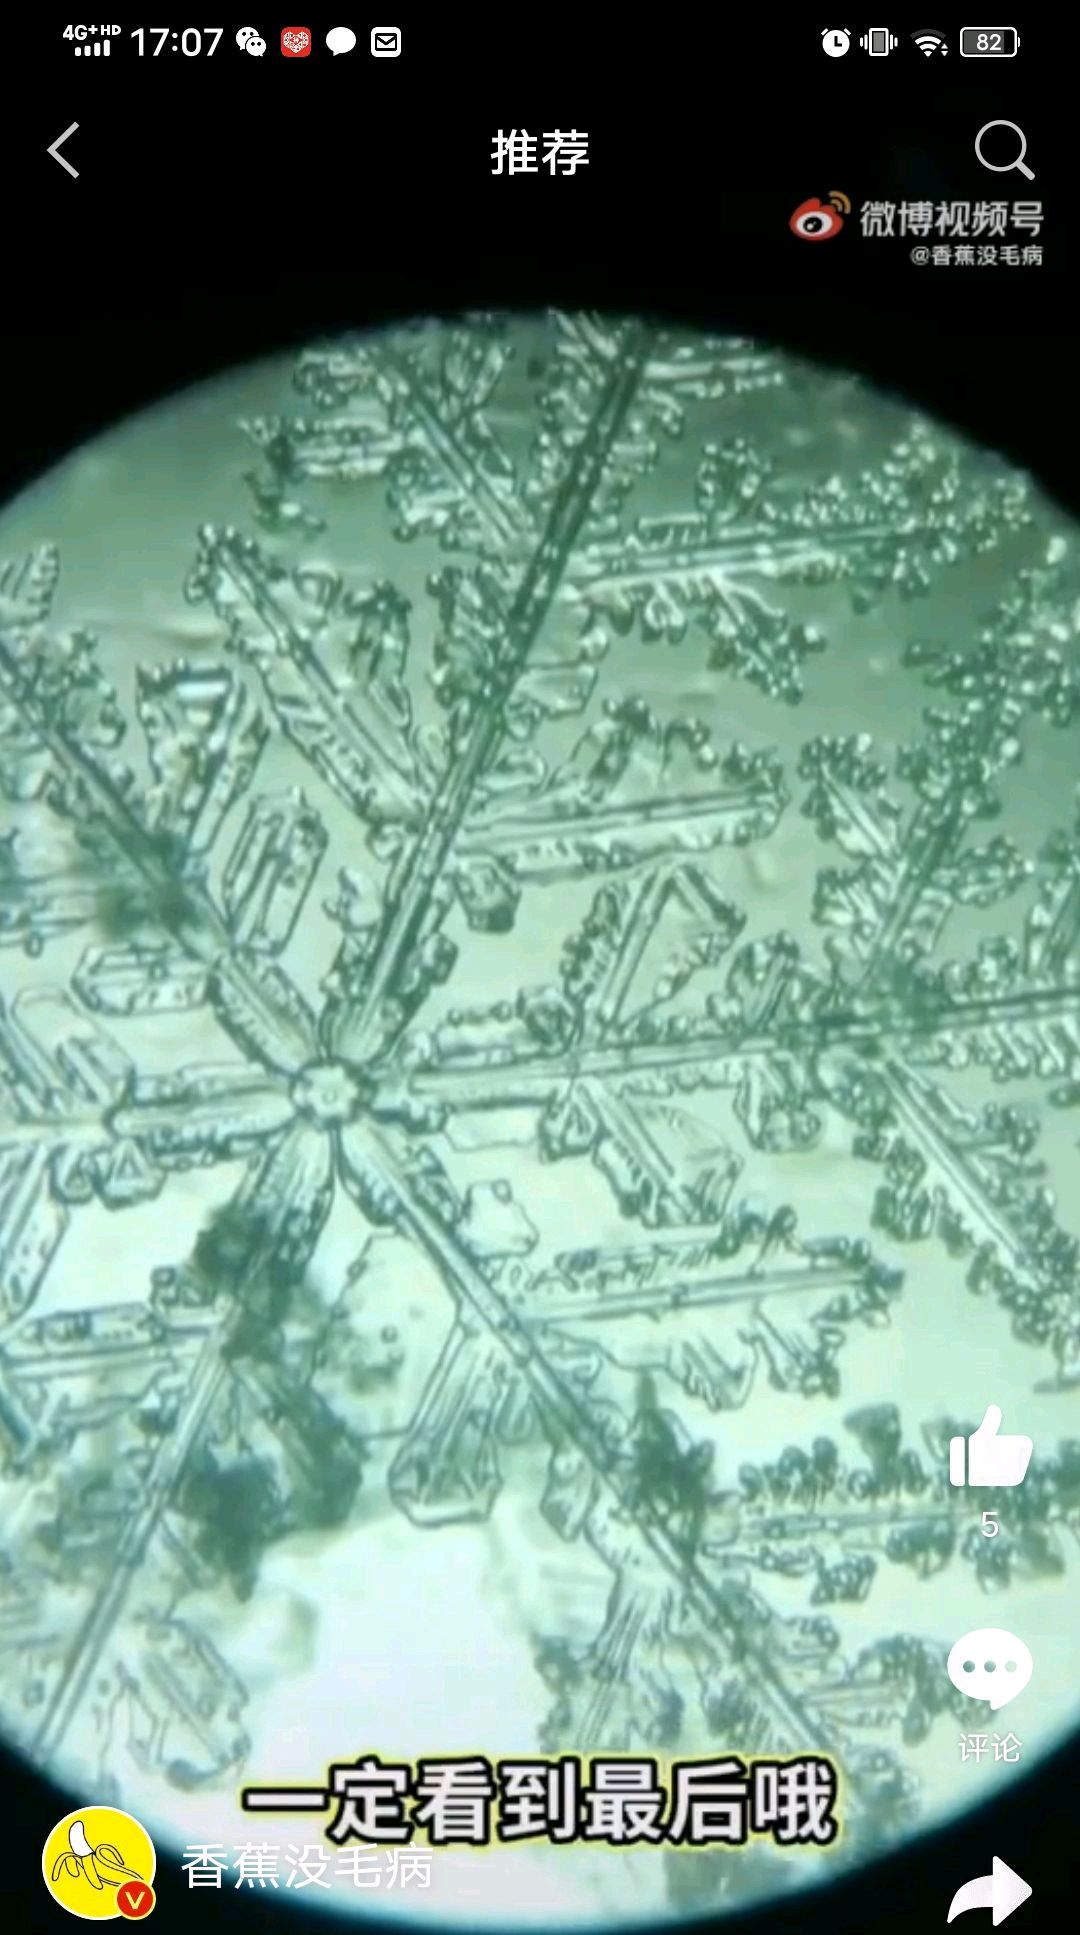 显微镜下放大100倍的雪花漂亮吗?